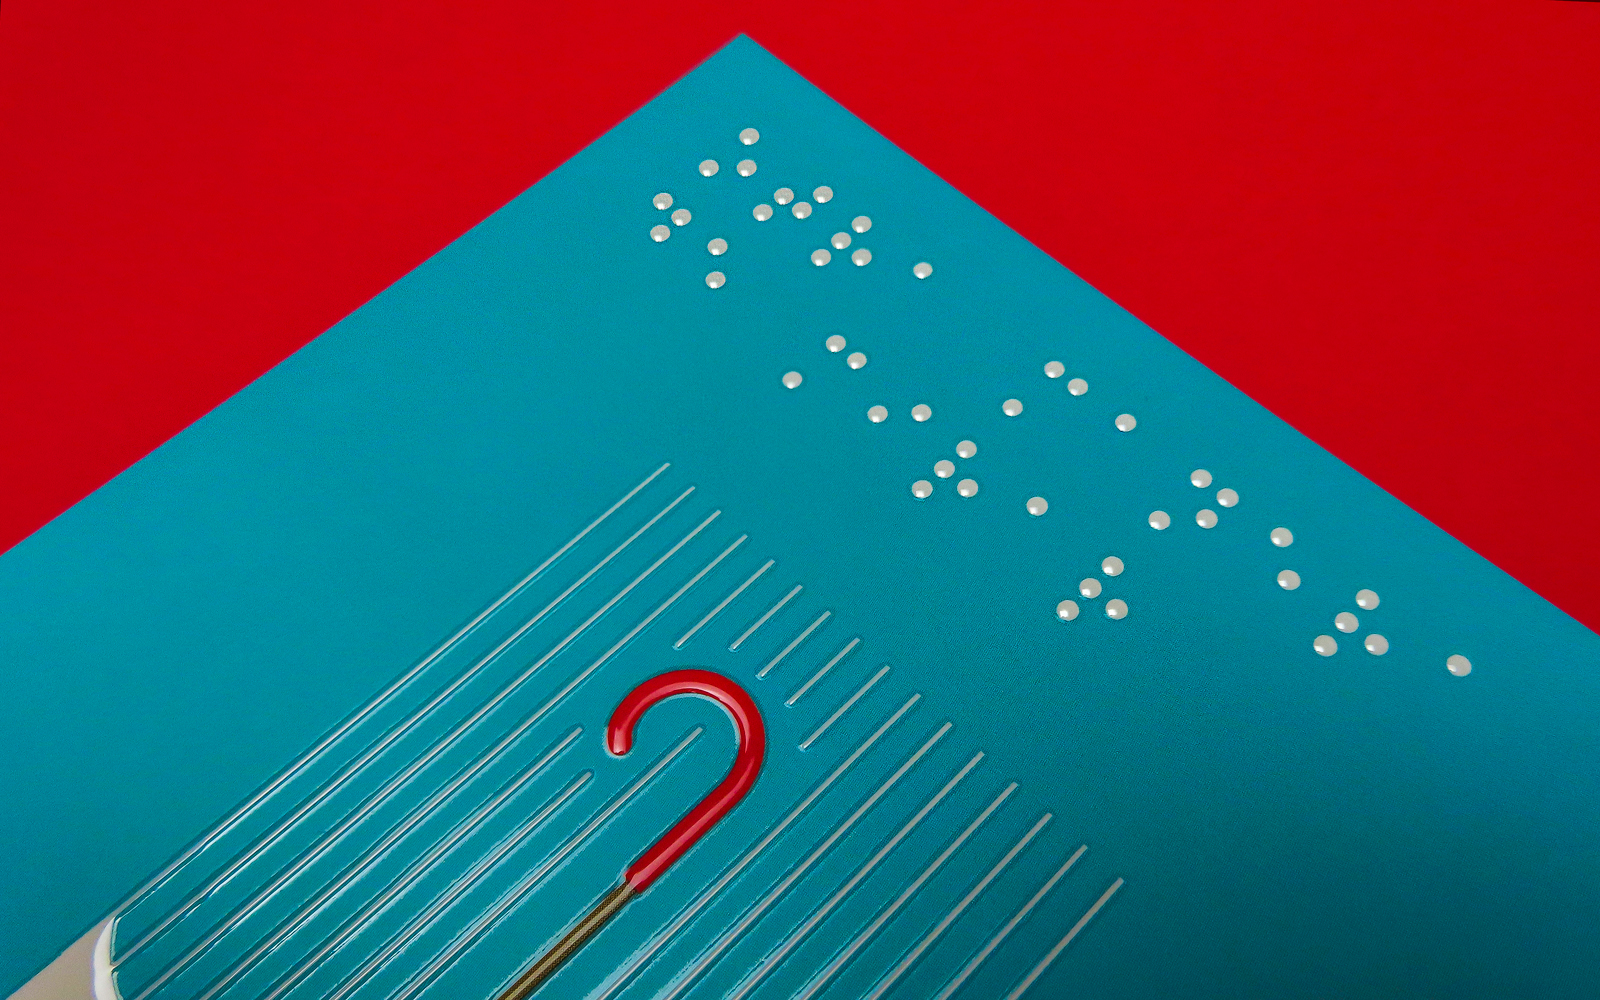 impresión de braille sólido